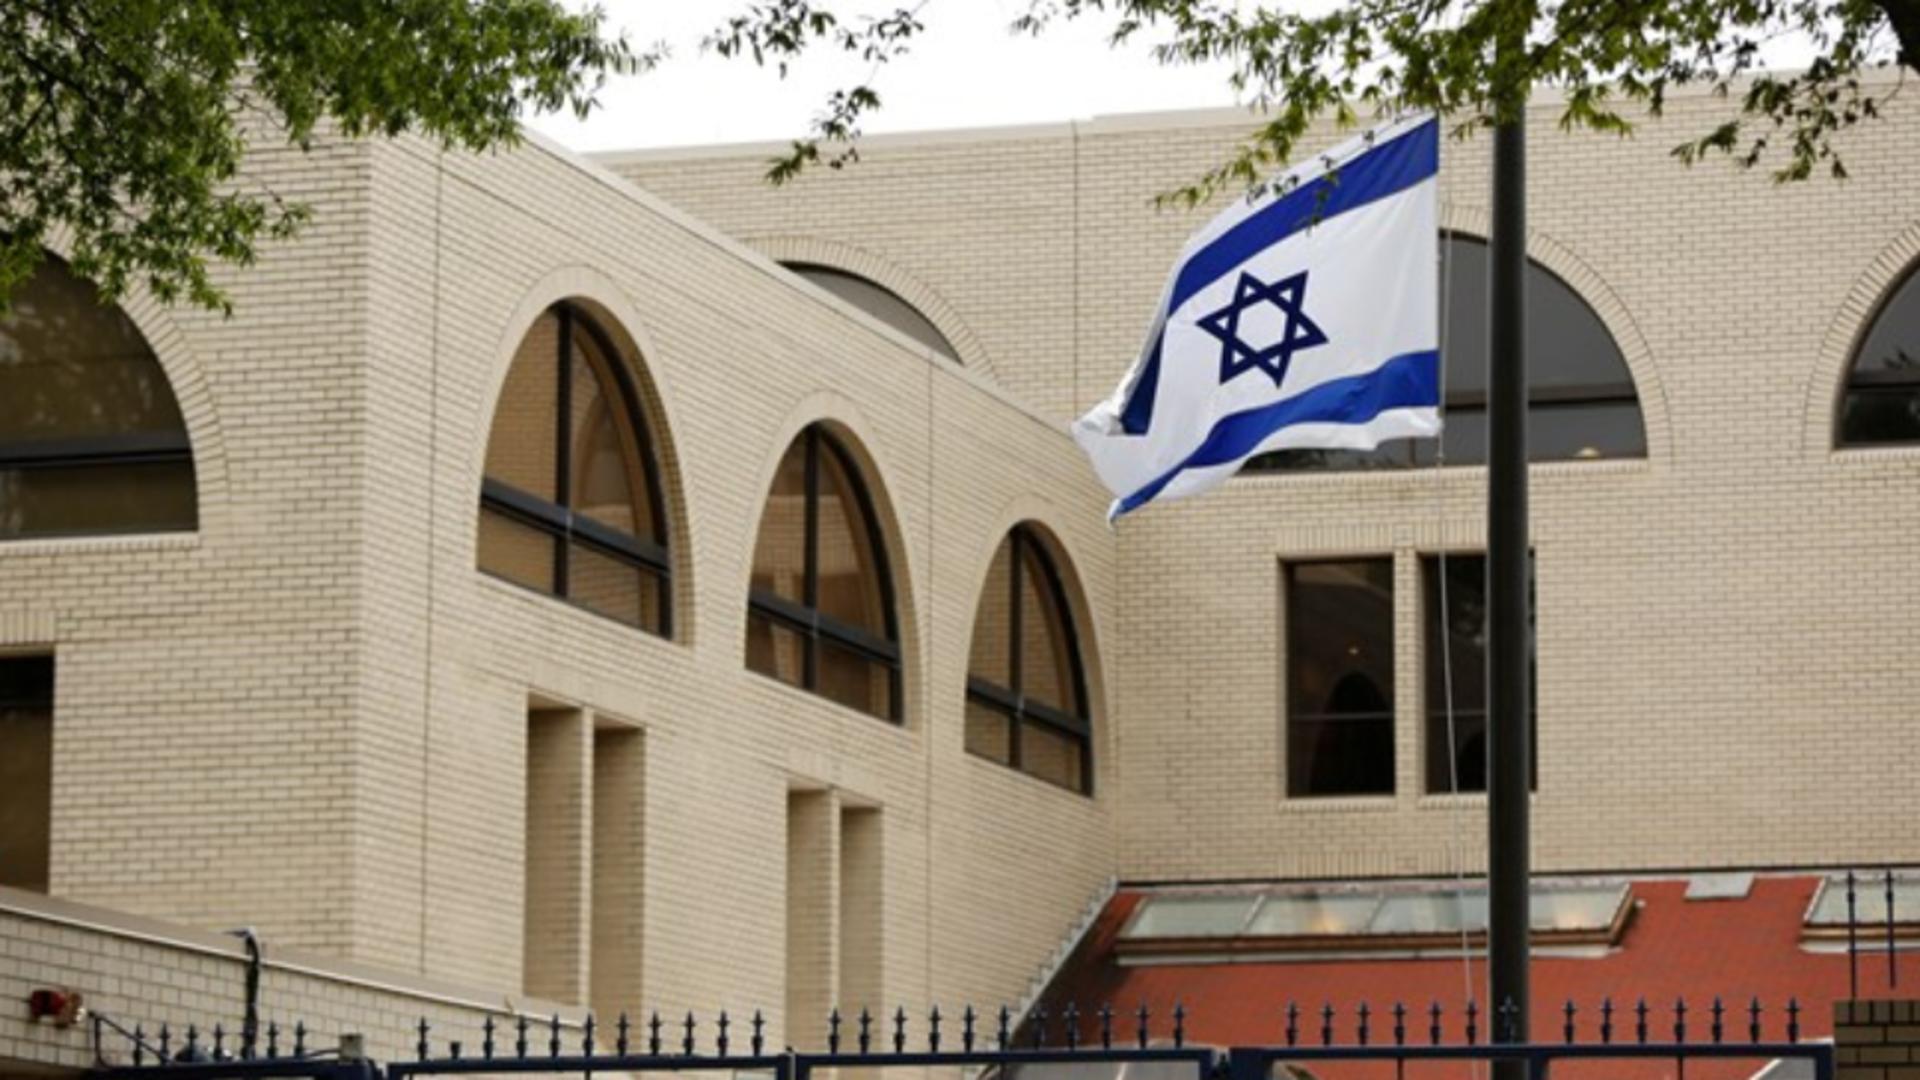 Сайт посольства израиля в россии